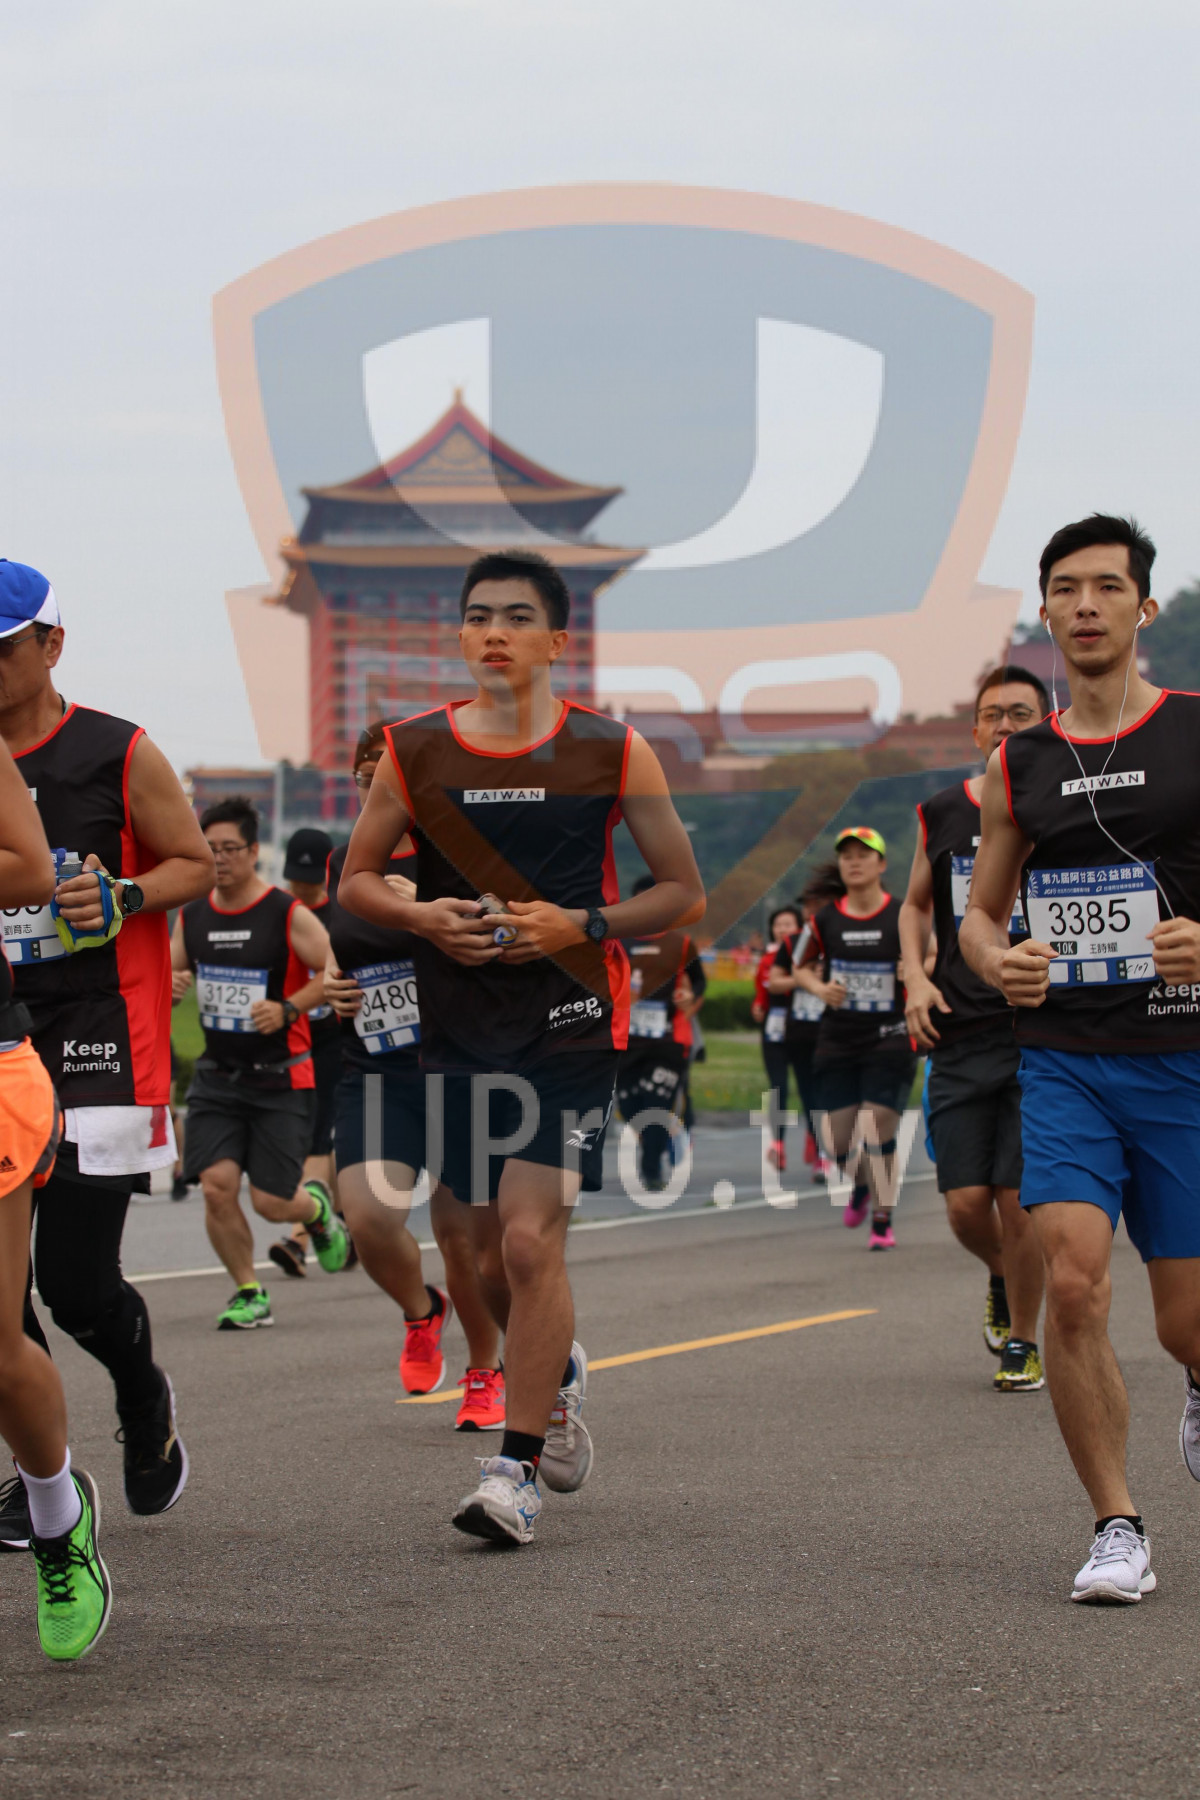 TAIWAN,,3385,keer,Keep,Running,keep,Runnin|2018 第九屆阿甘盃公益路跑|Soryu Asuka Langley